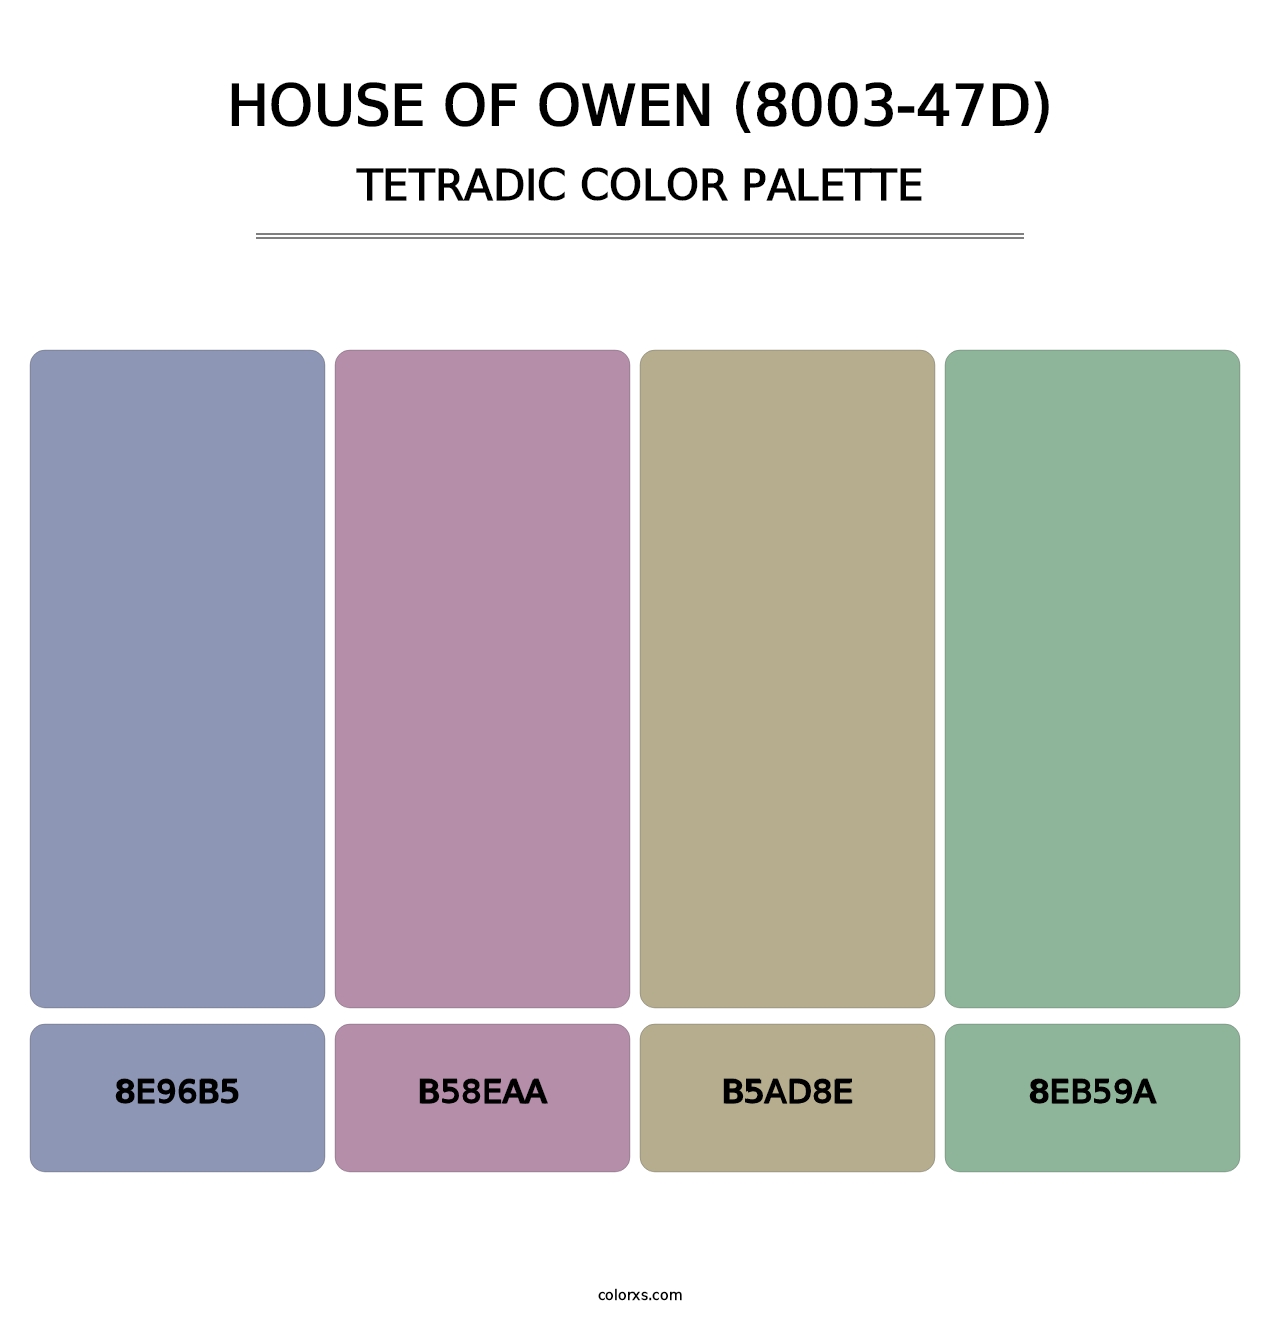 House of Owen (8003-47D) - Tetradic Color Palette